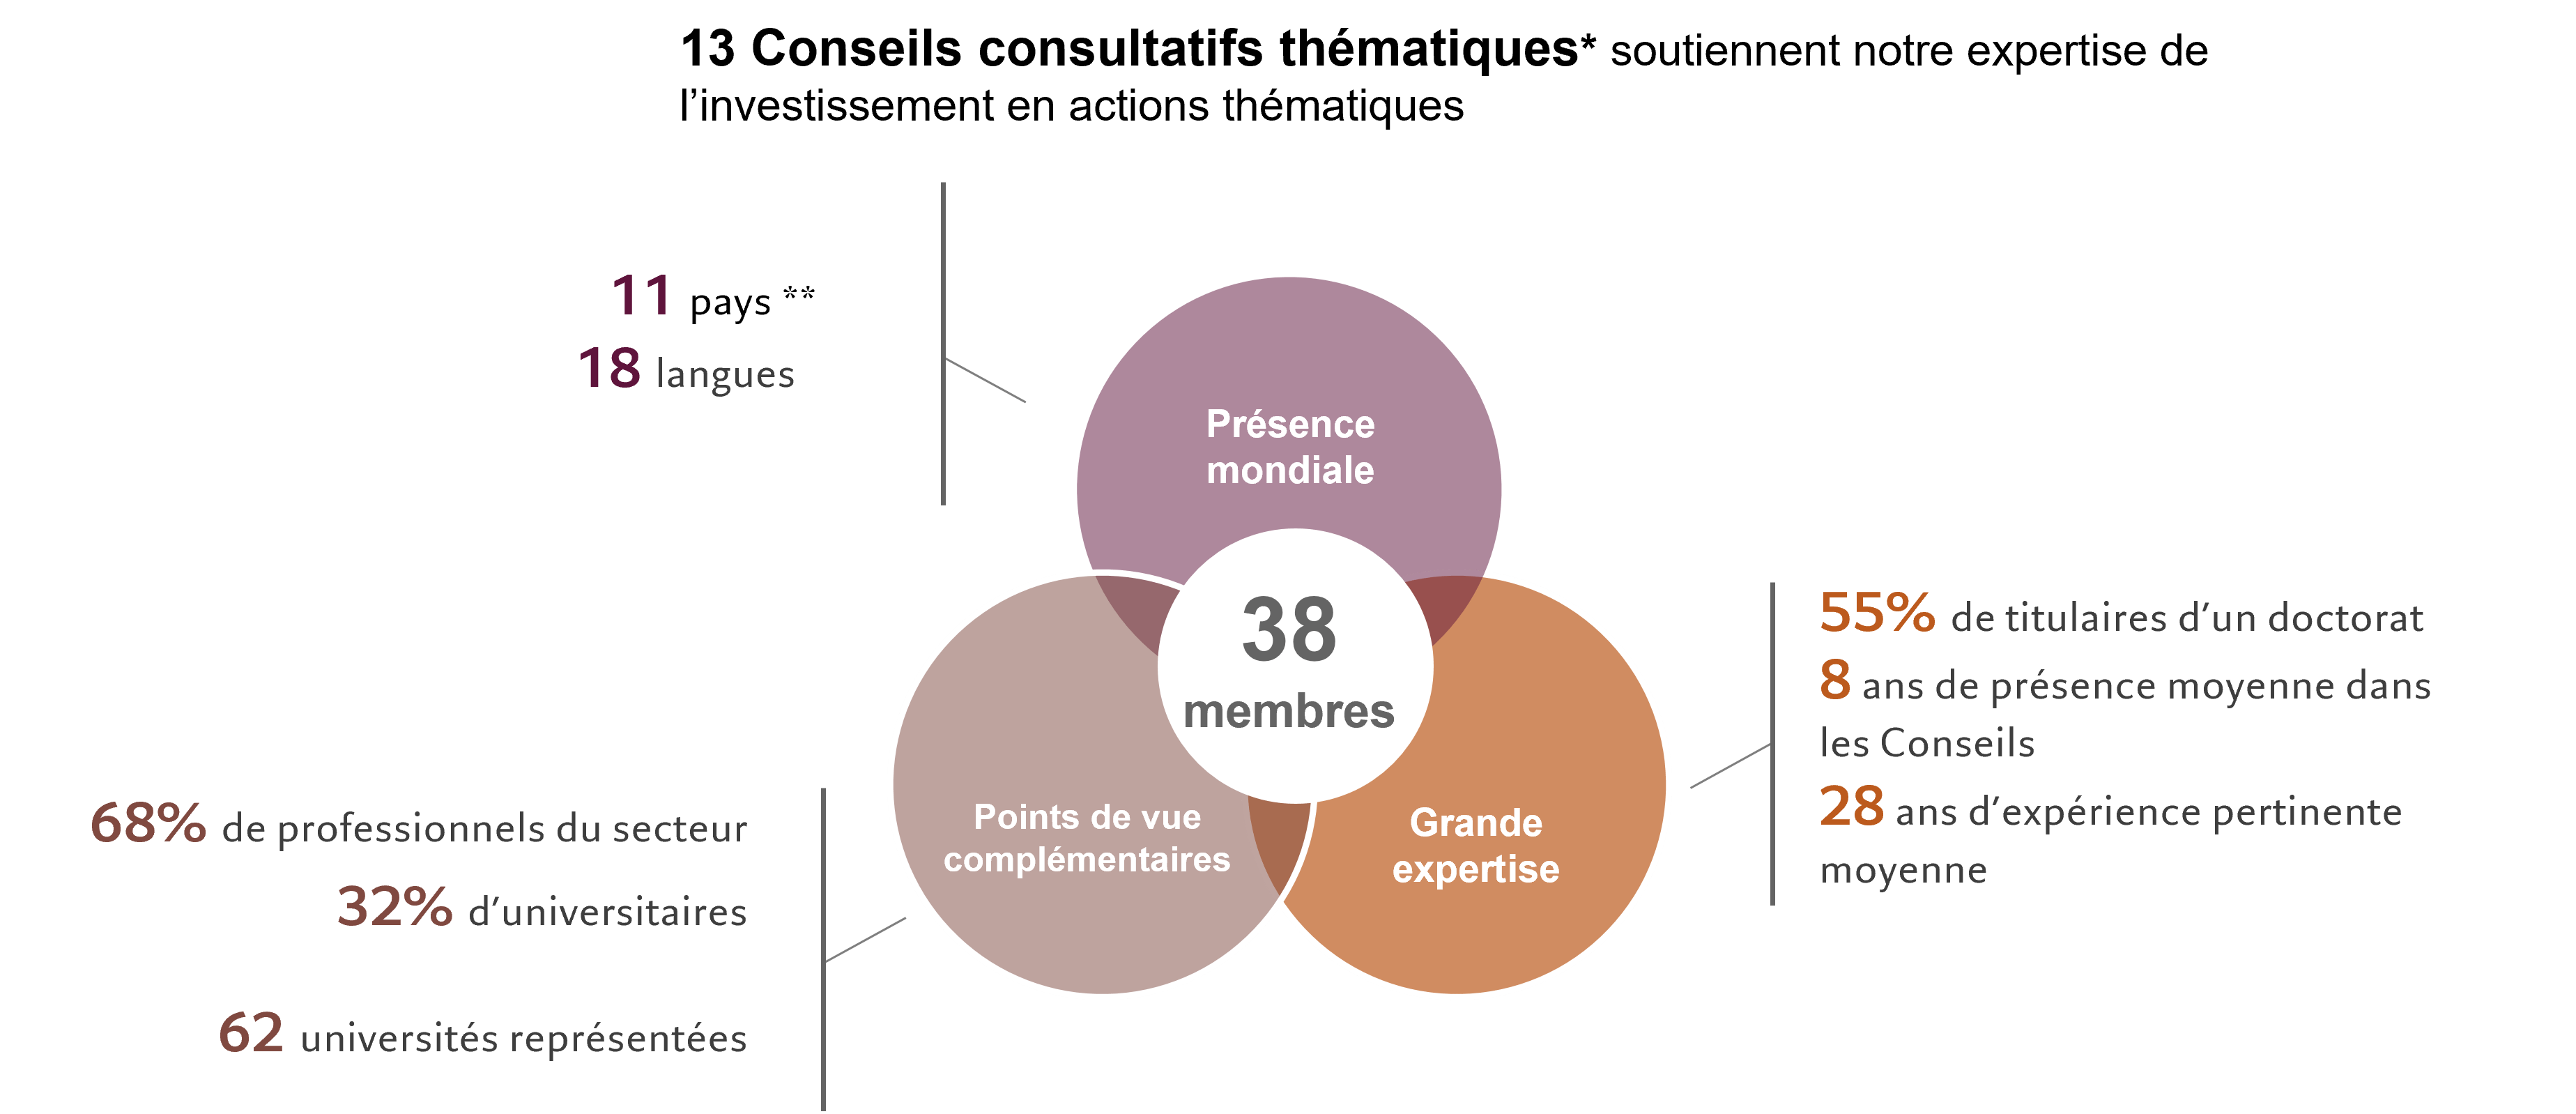 Contribution de 13 Conseils consultatifs thématiques